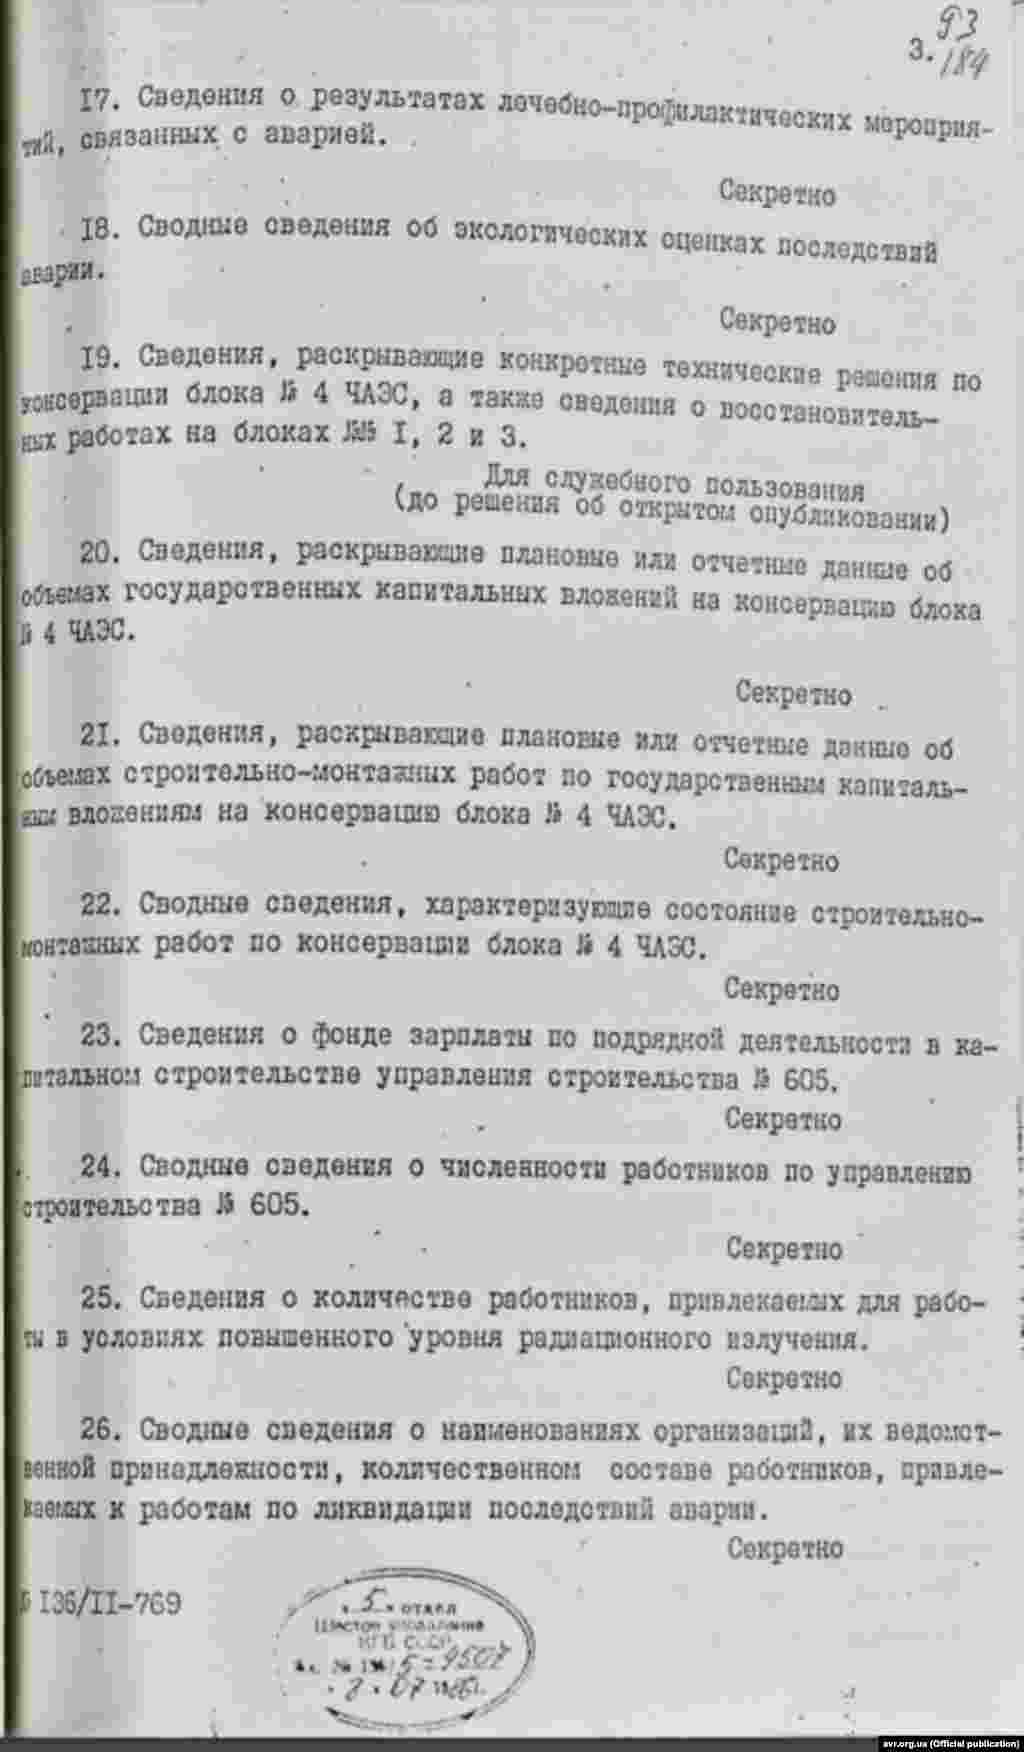 Cписок інформації щодо Чорнобильської катастрофи, яка підлягала засекречуванню, 8 липня 1986 року